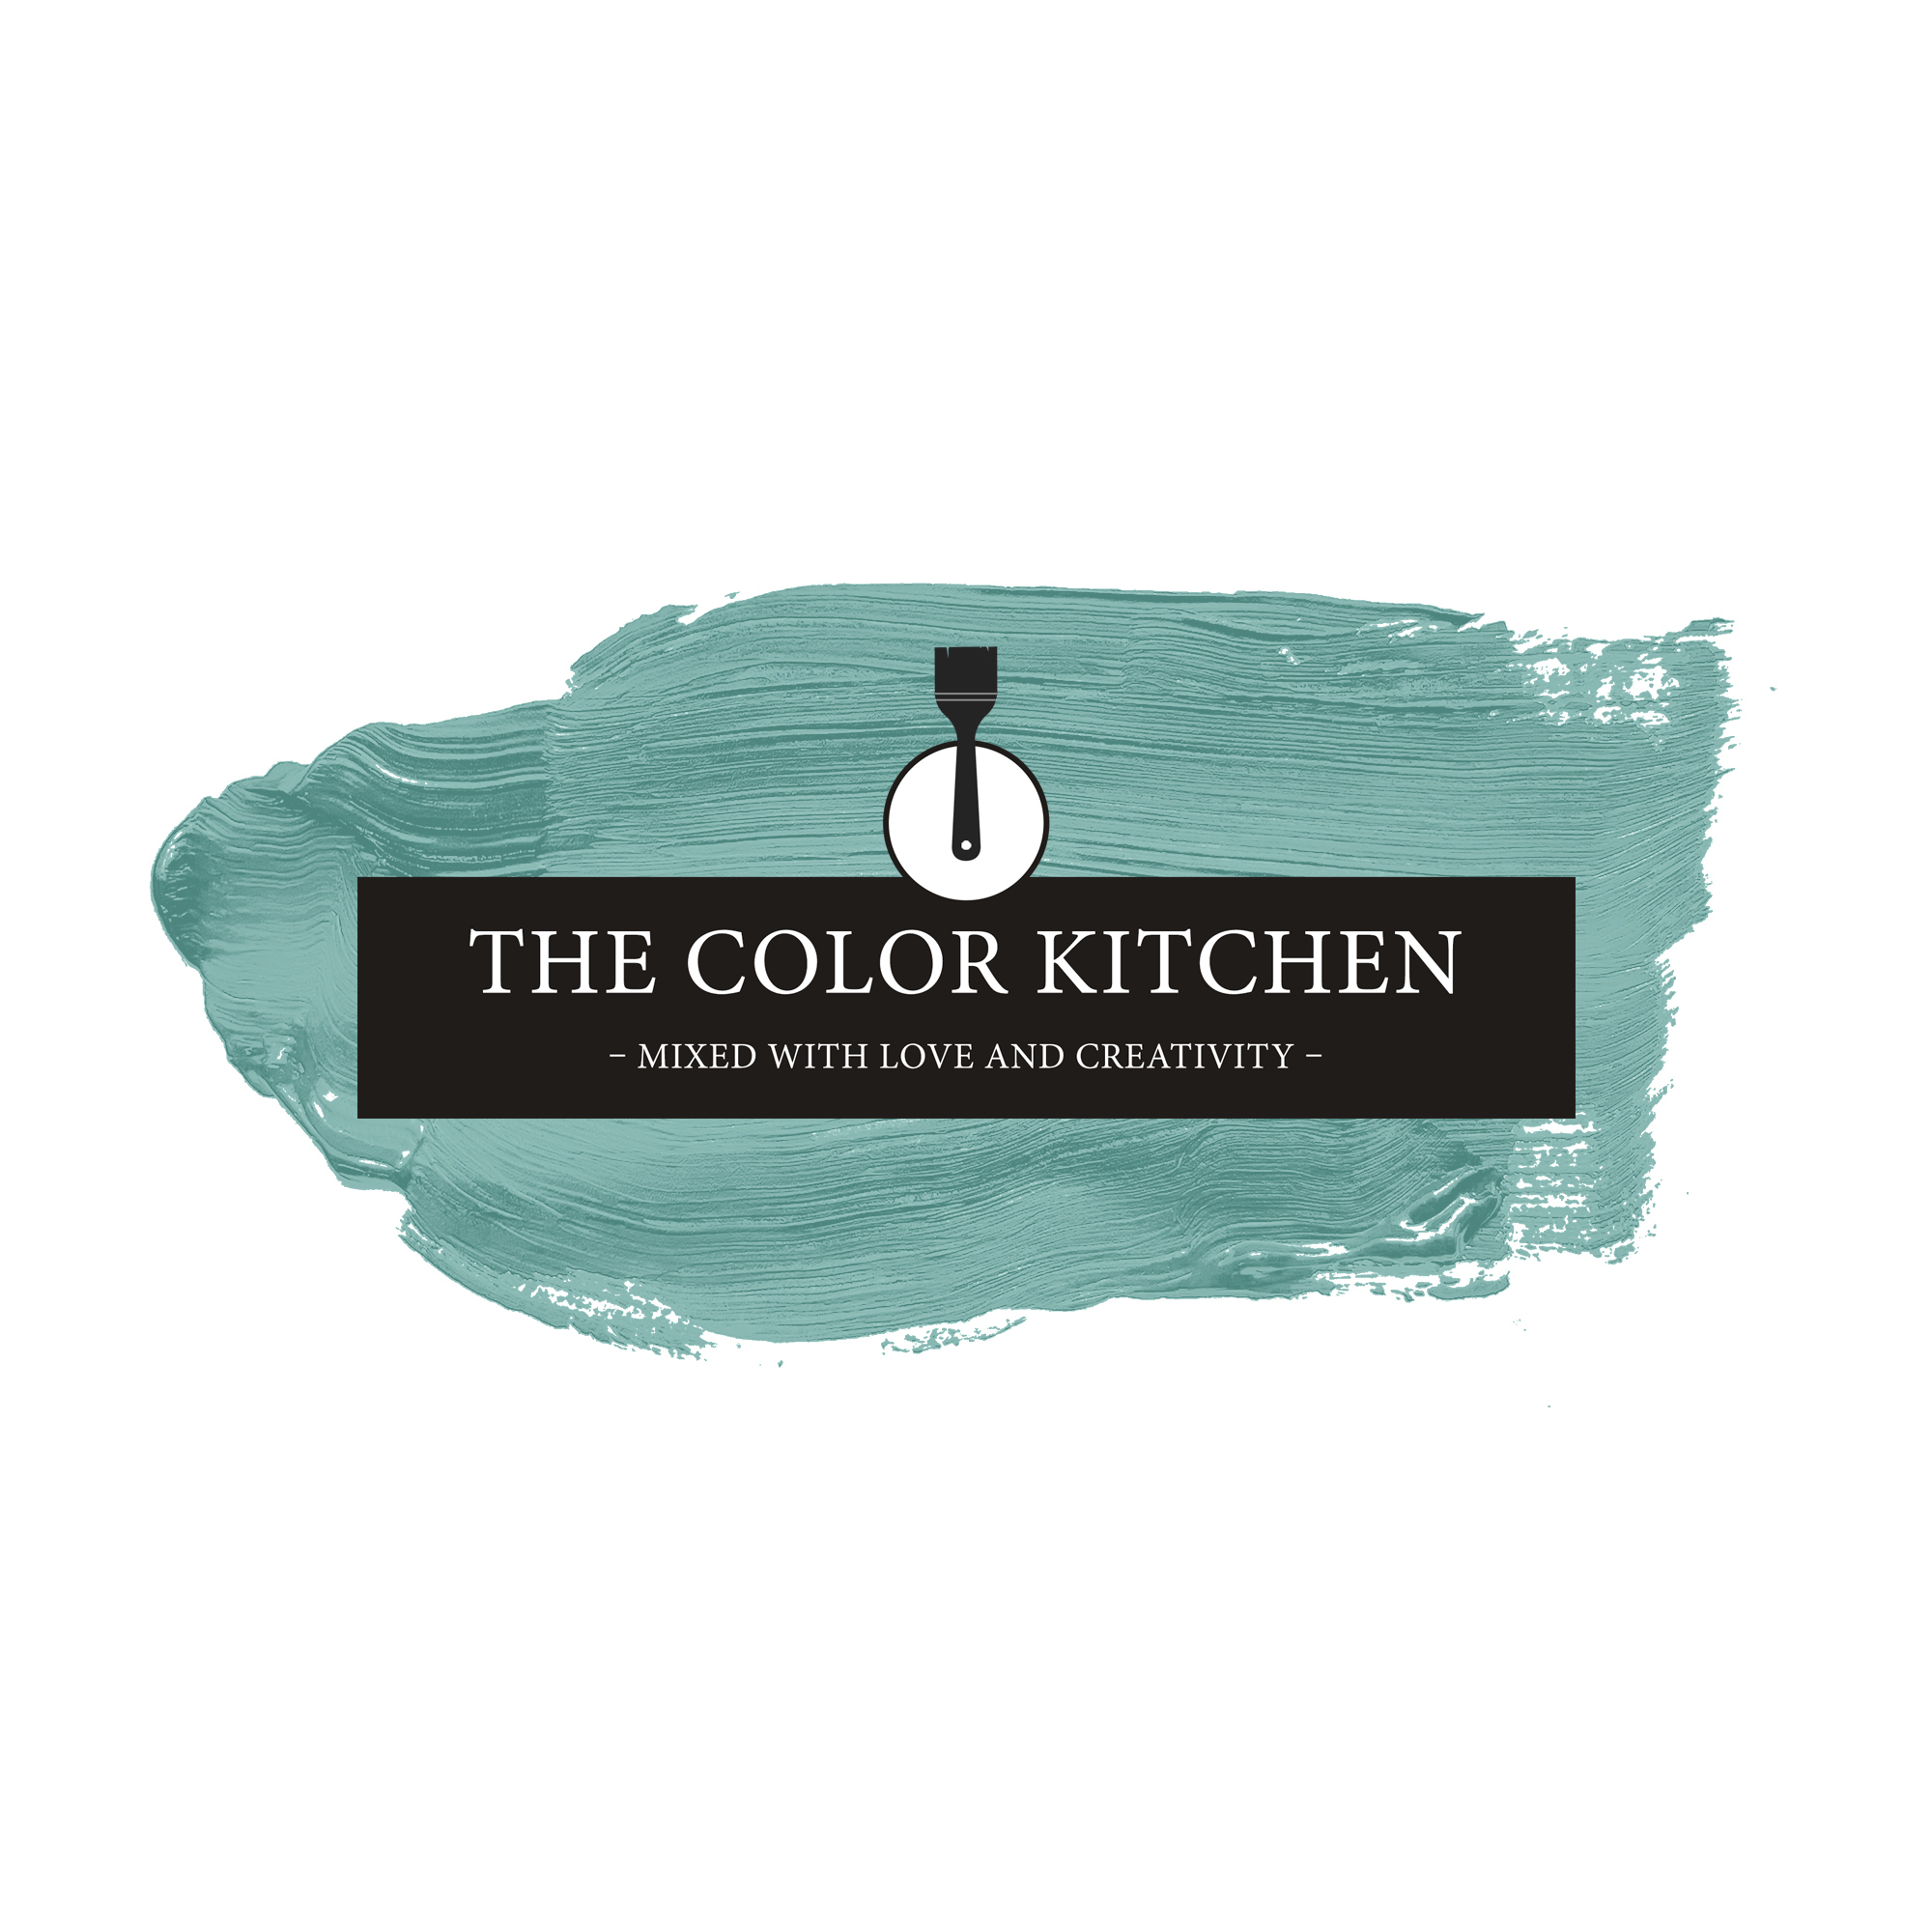 The Color Kitchen Magical Mint 2,5 l